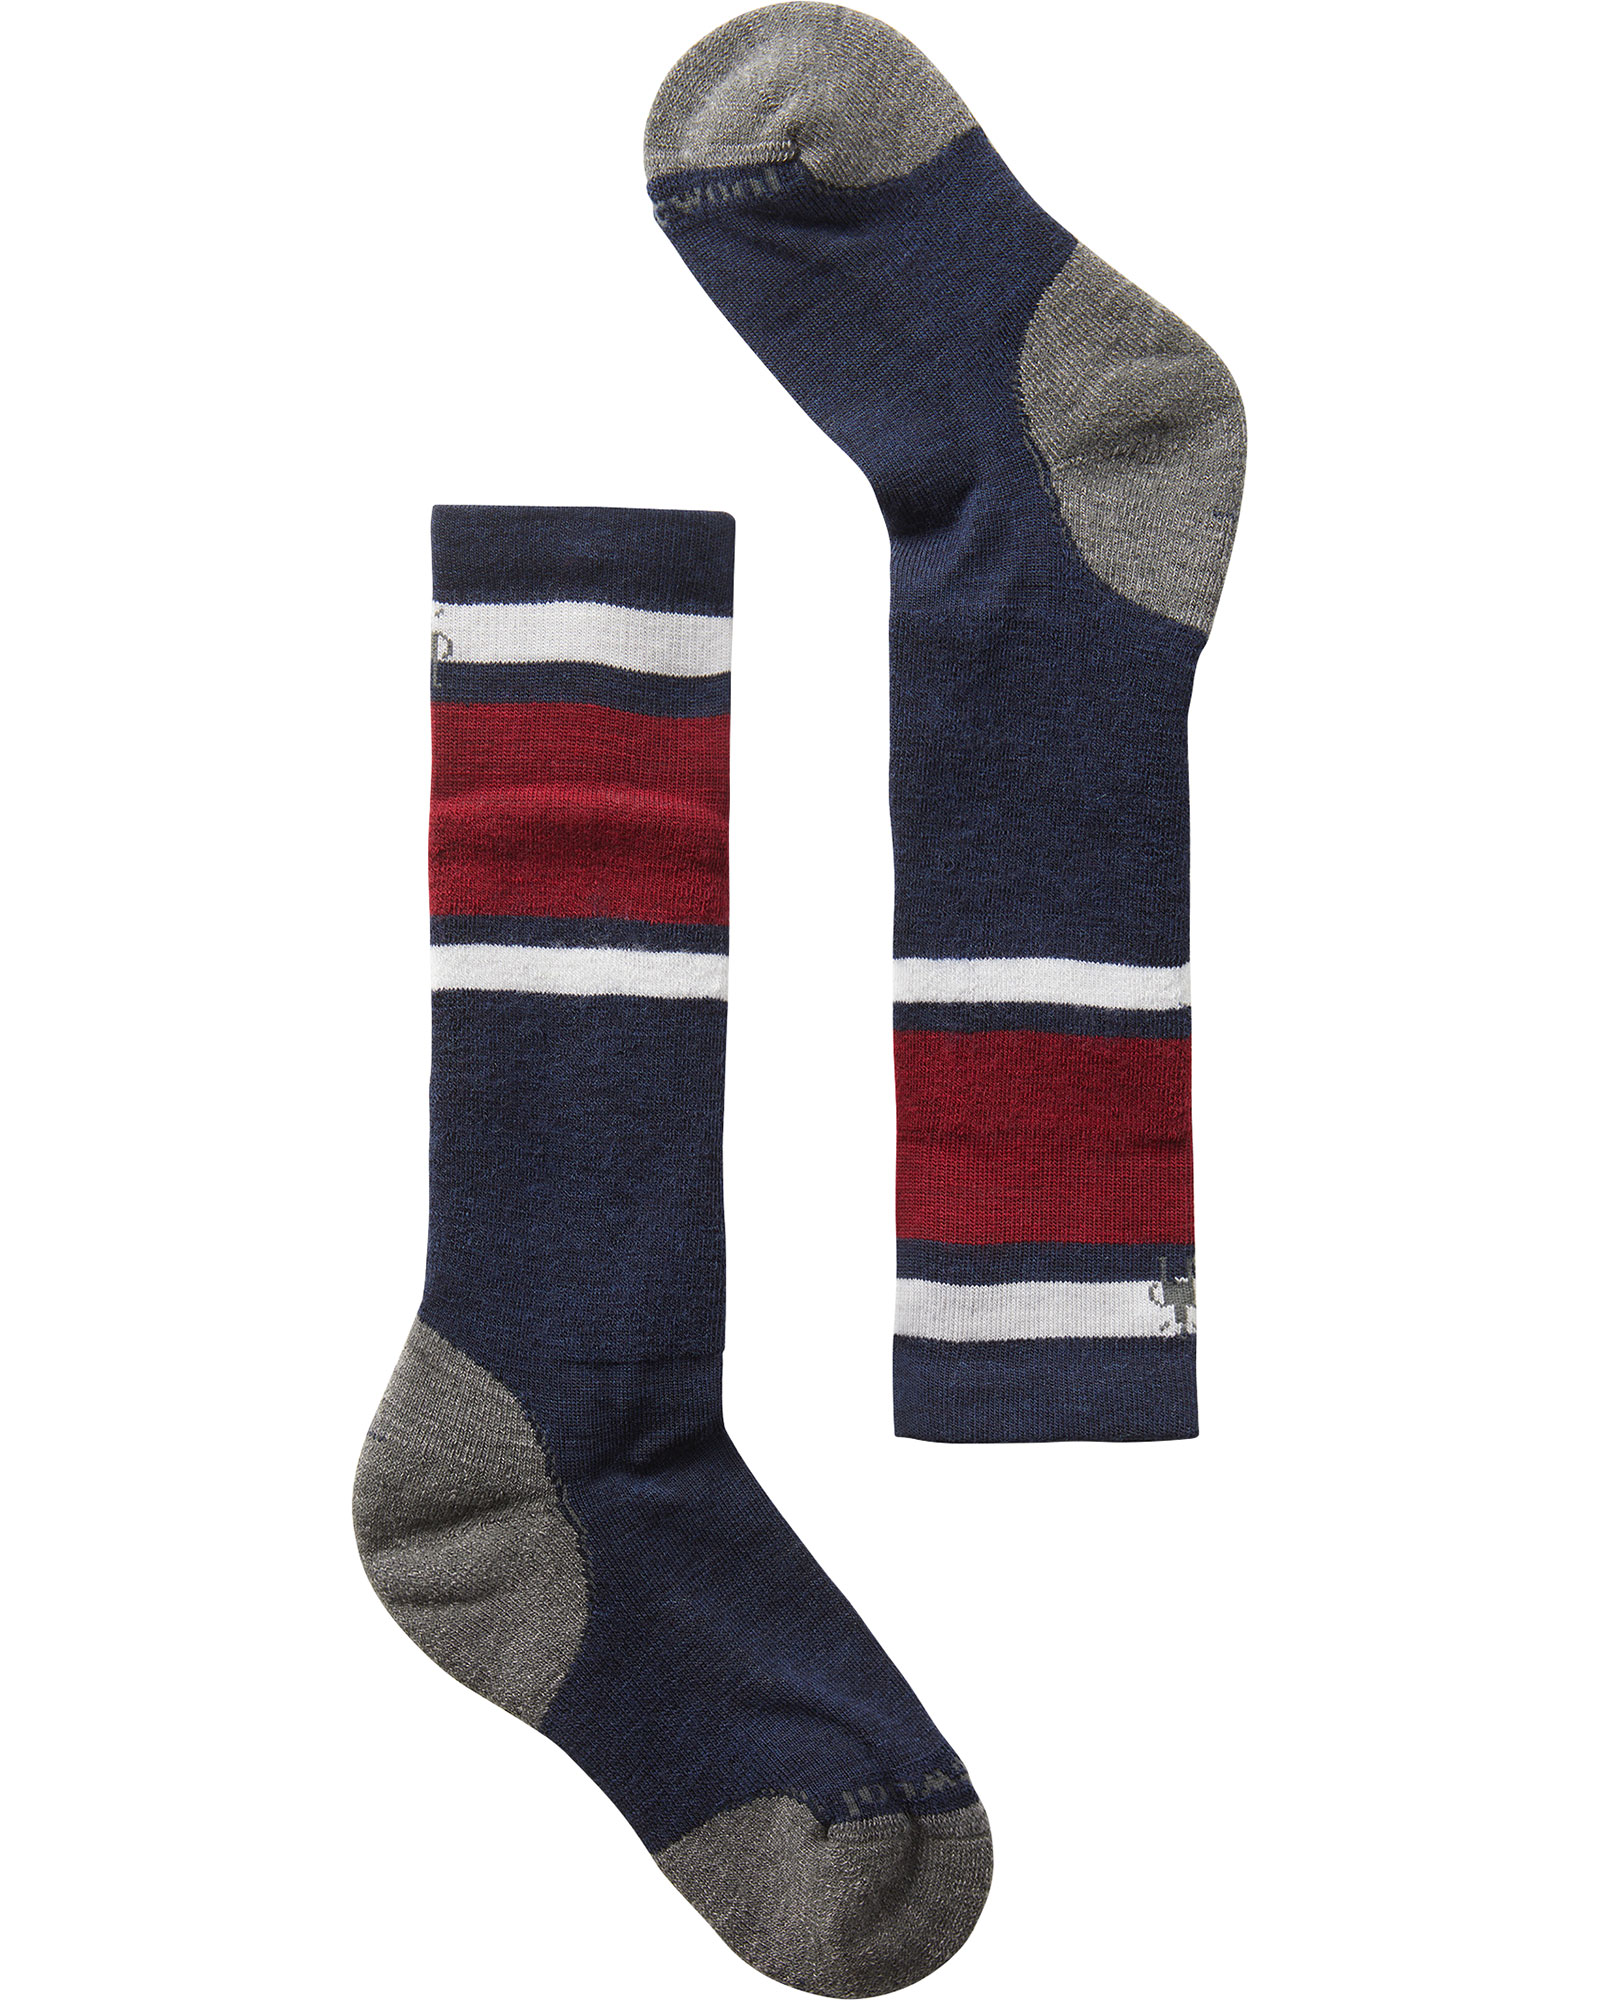 Smartwool Wintersport Full Cushion Kids’ Socks - Deep Navy L